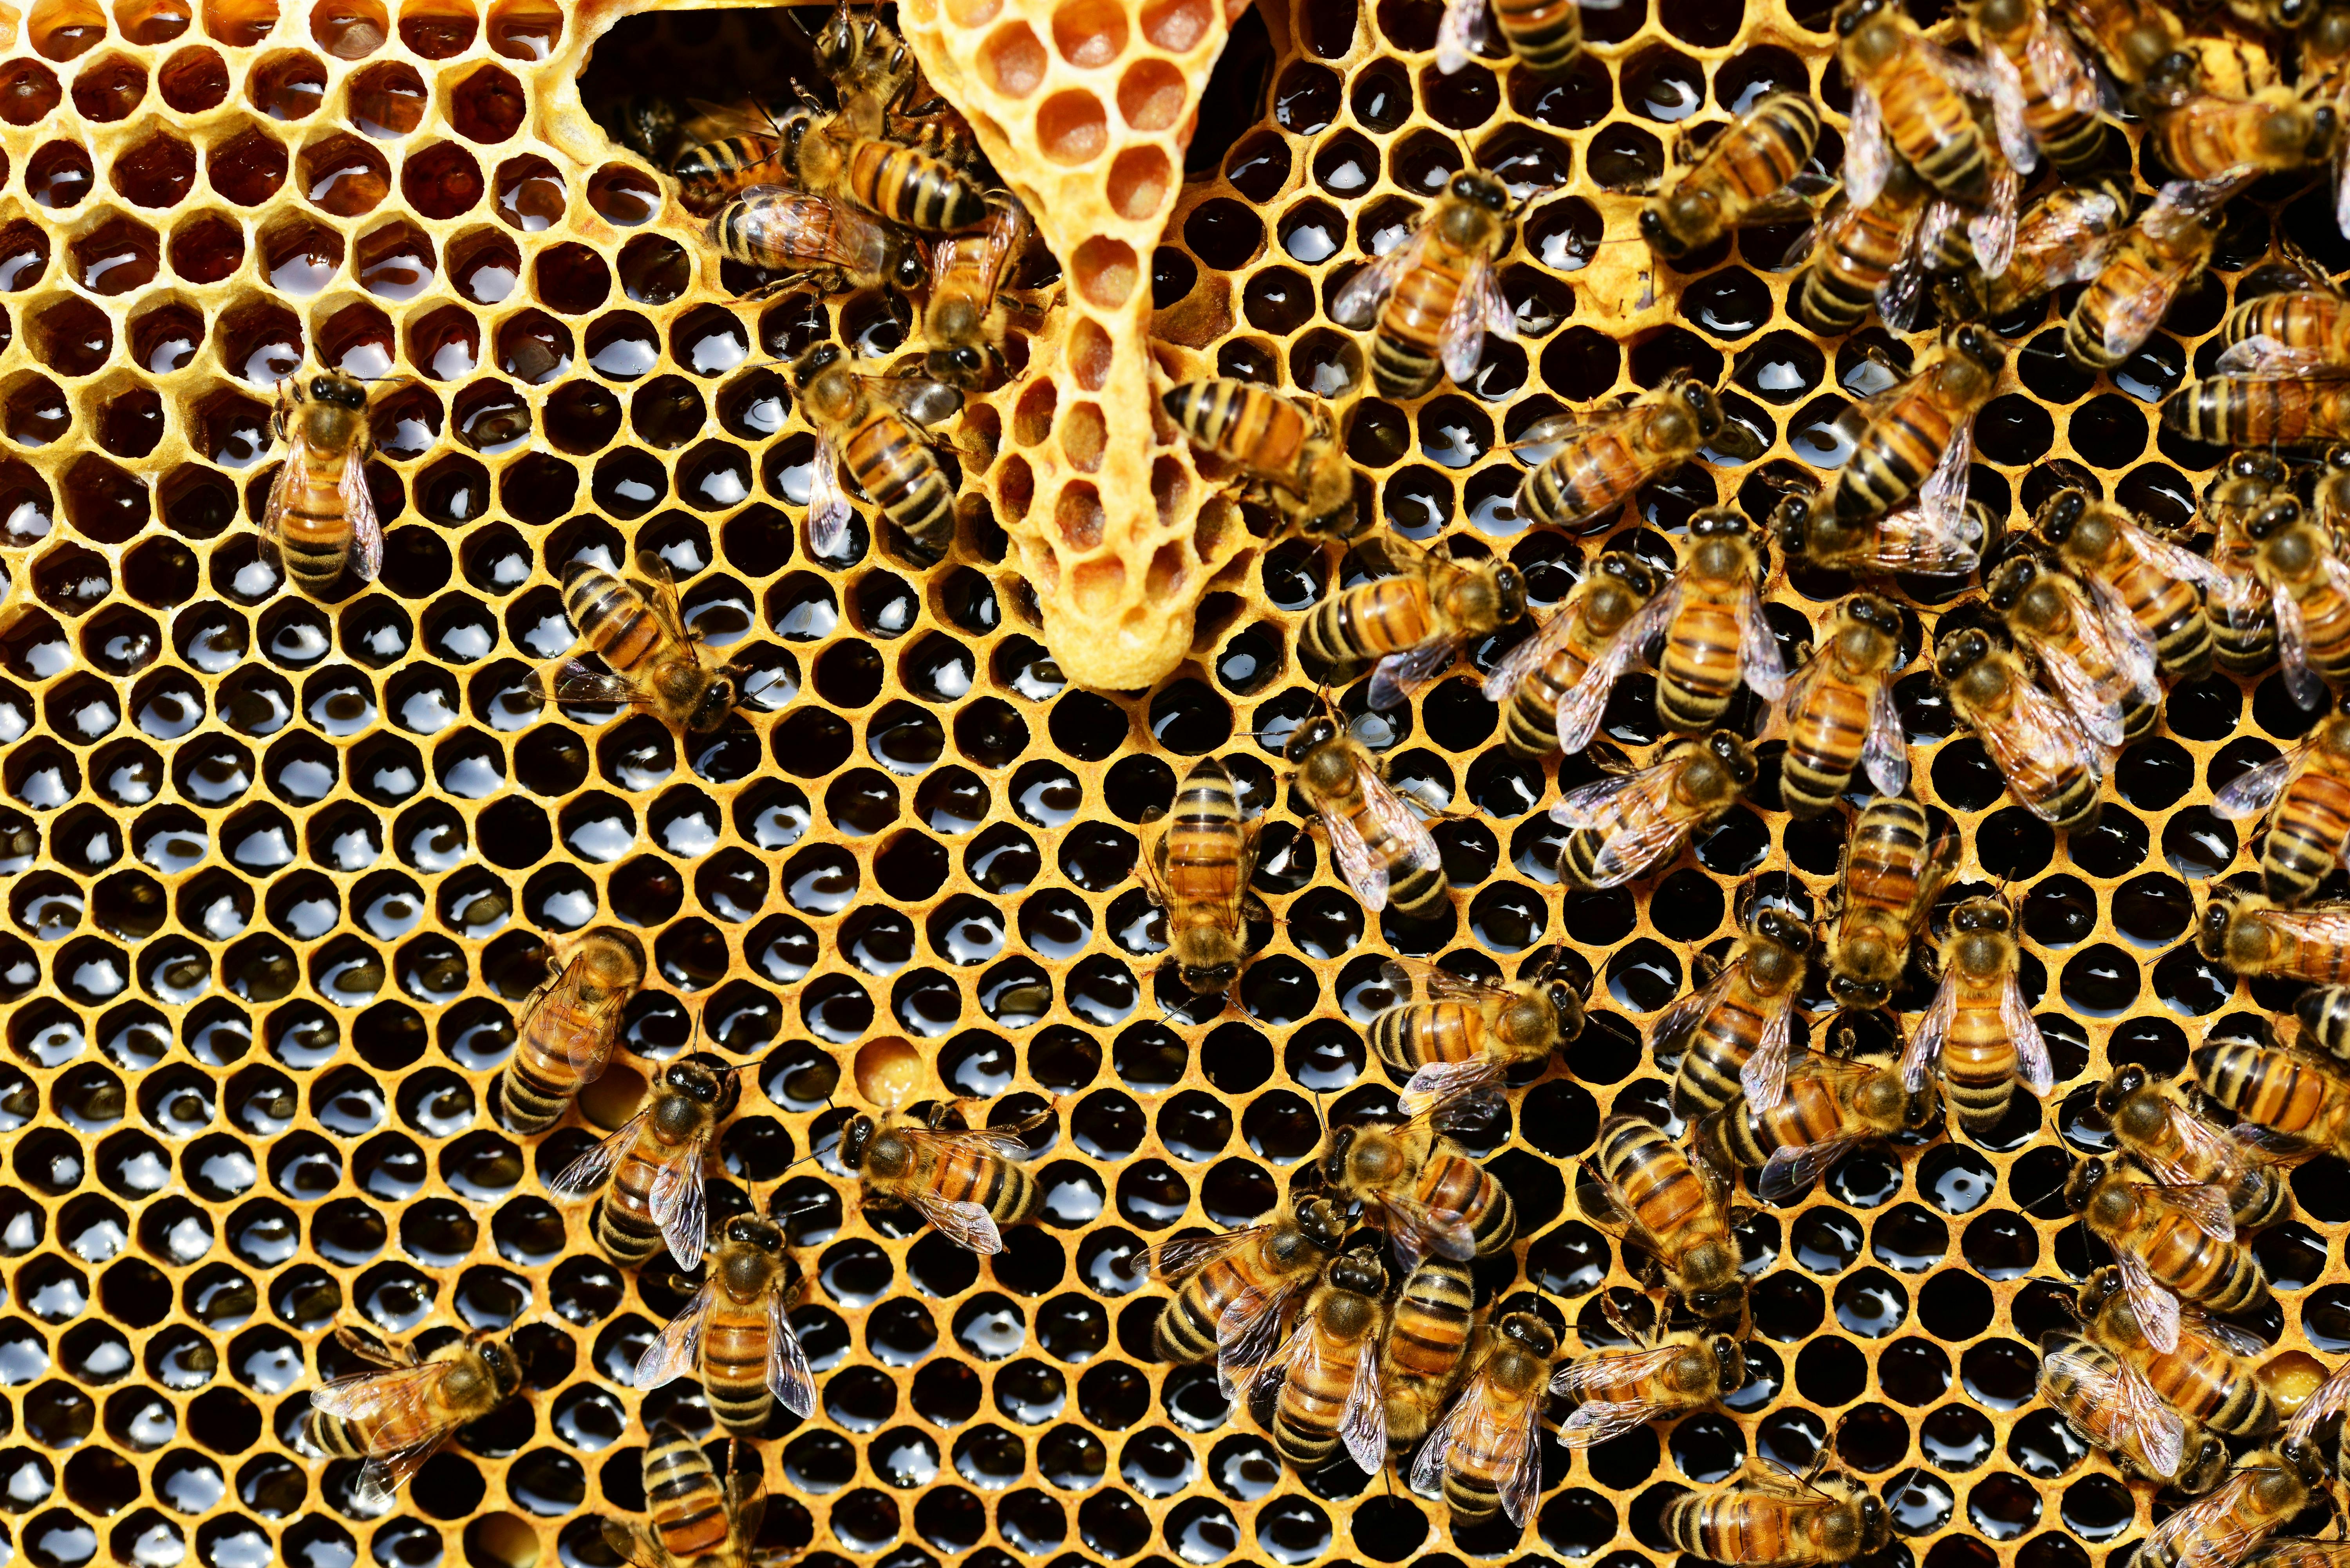 https://images.pexels.com/photos/56876/queen-cup-honeycomb-honey-bee-new-queen-rearing-compartment-56876.jpeg?cs=srgb&dl=pexels-pixabay-56876.jpg&fm=jpg